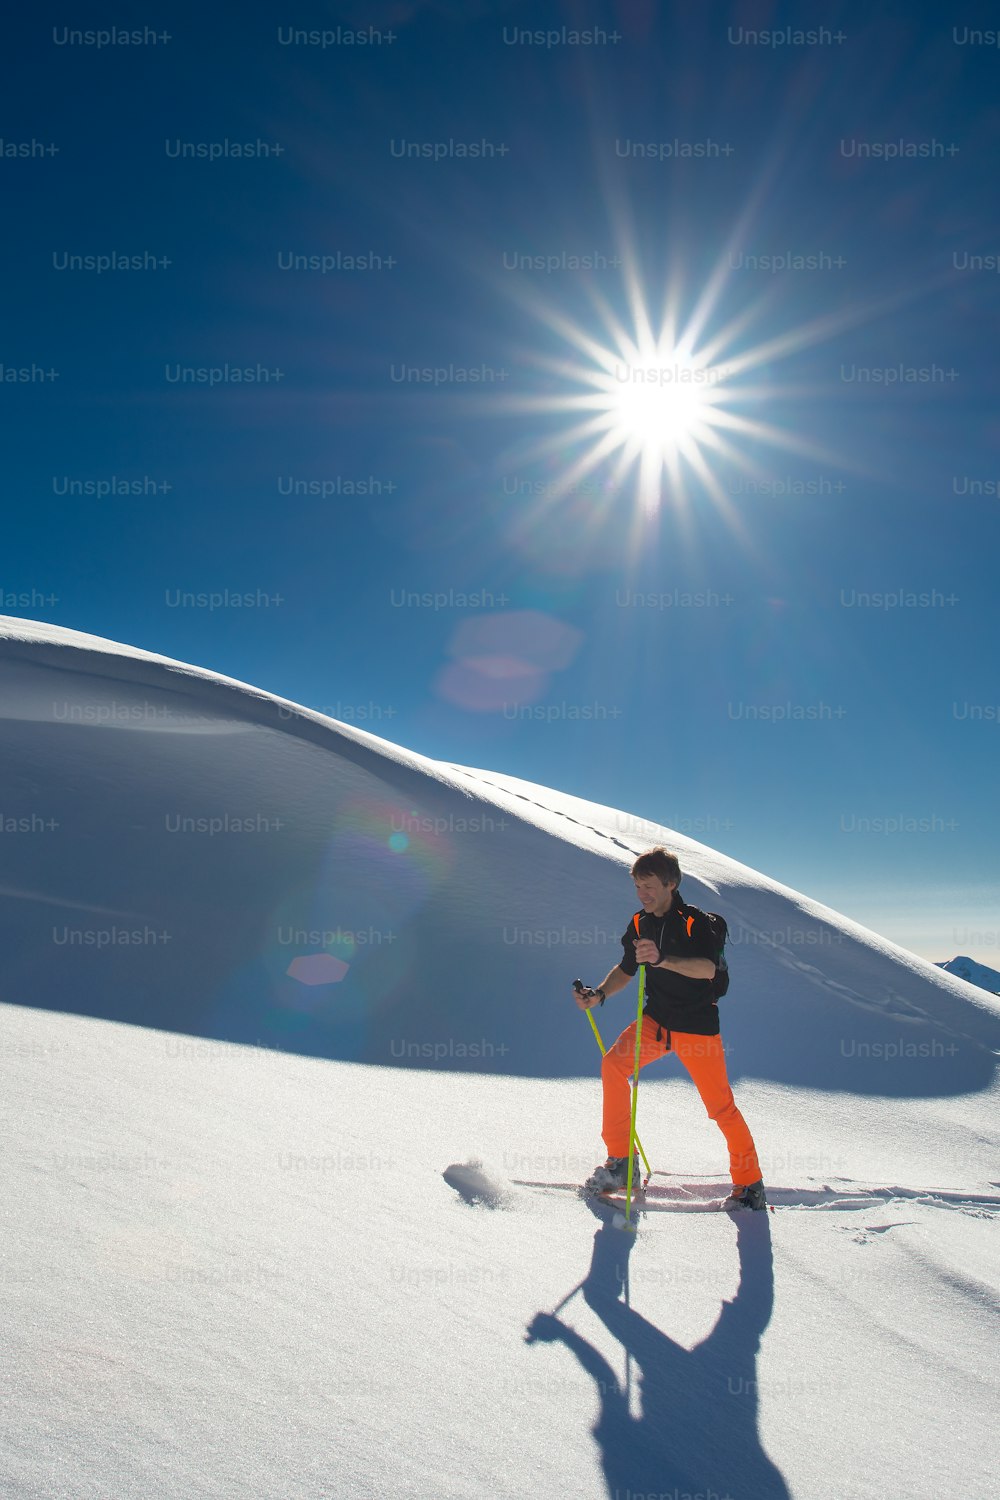 남자 알파인 스키어가 강한 화창한 날에 신선한 눈 속에서 스키와 물개 가죽을 타고 등반합니다.